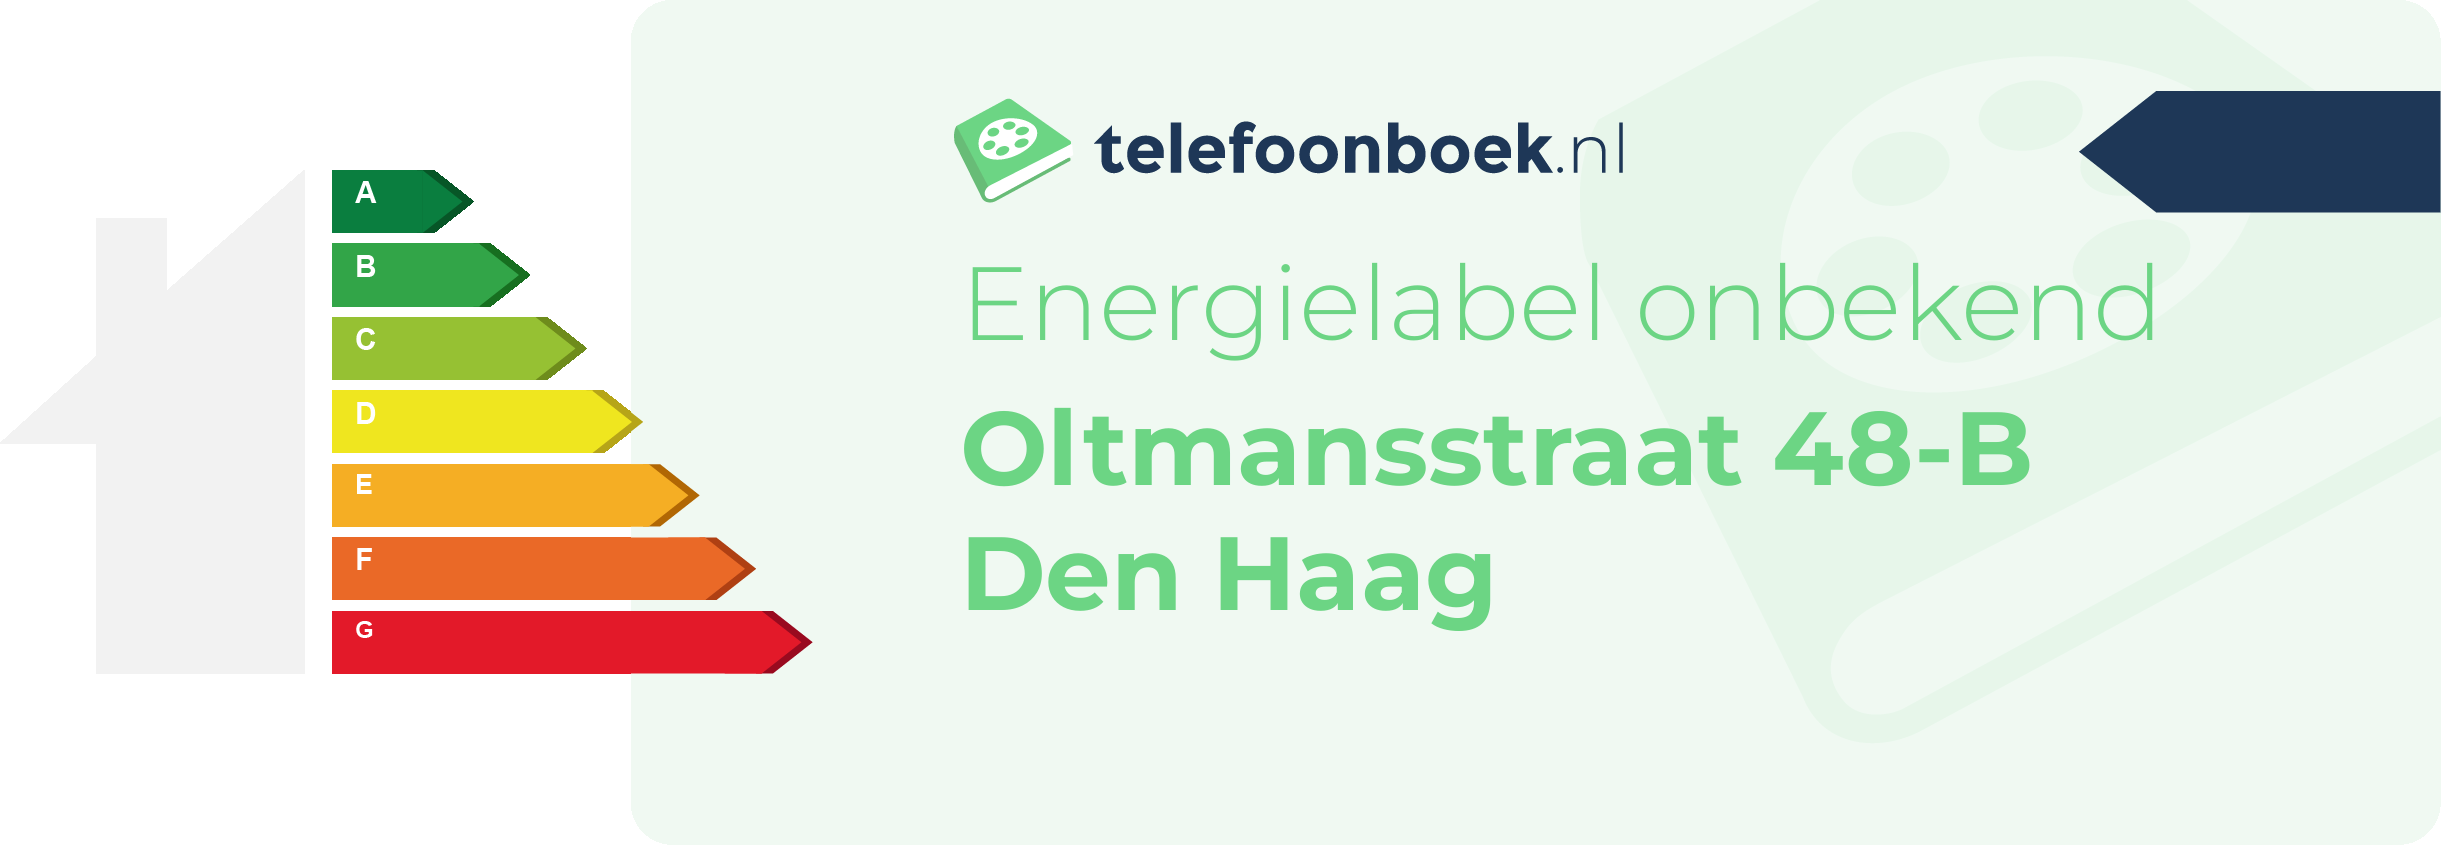 Energielabel Oltmansstraat 48-B Den Haag